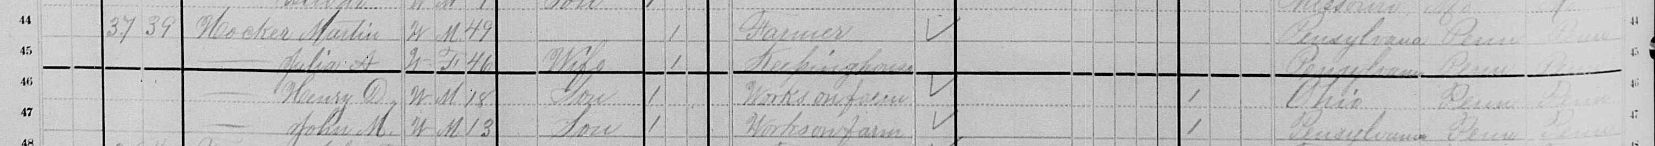 1880 Martin Hocker census record